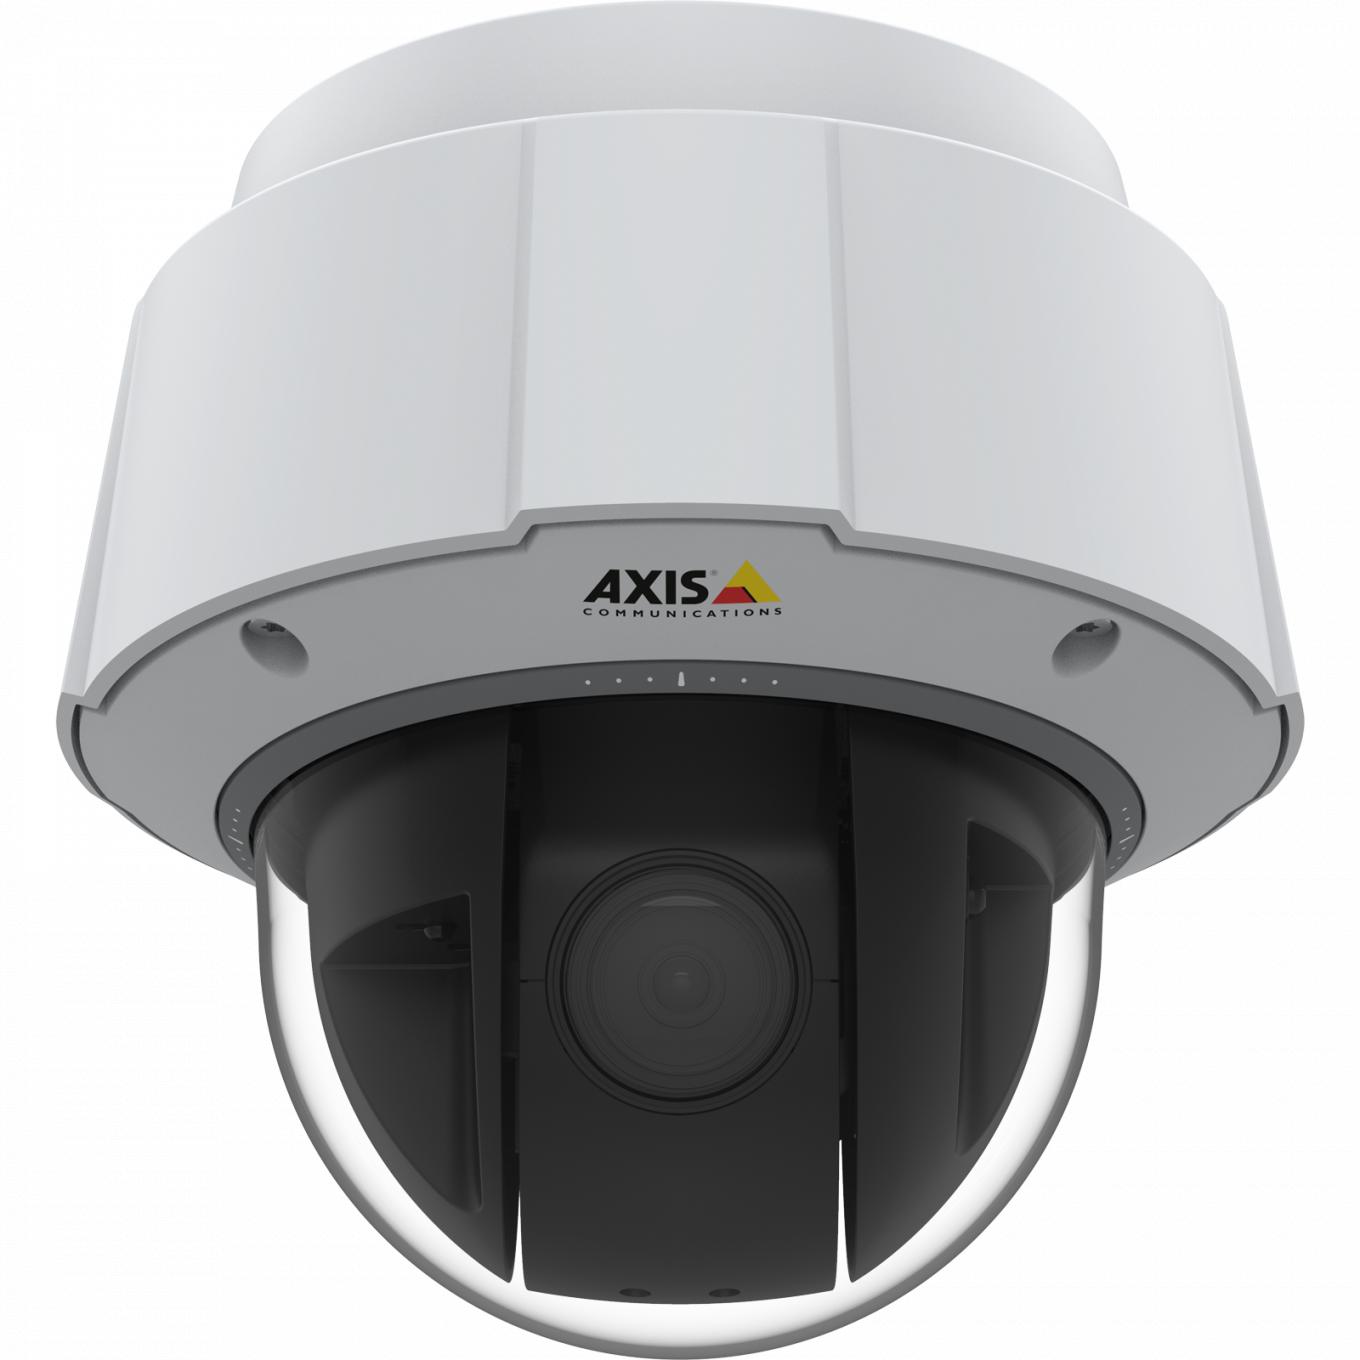 La cámara IP AXIS Q6075-E tiene TPM con certificado FIPS 140-2 de nivel 2. La cámara se muestra con vista frontal.